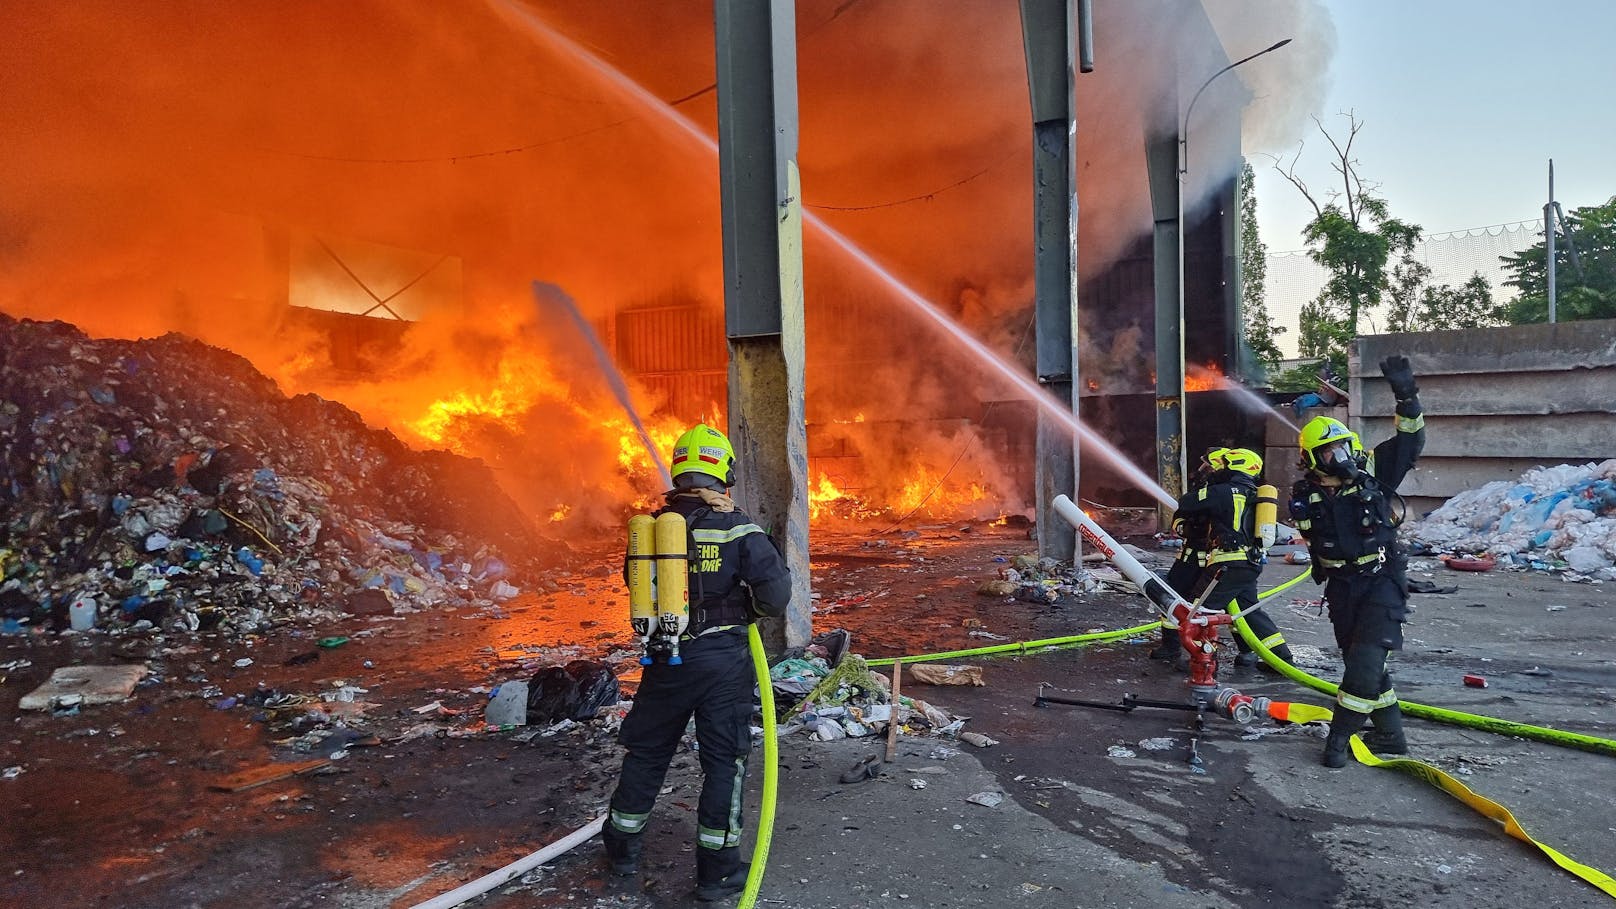 Am Gelände der Abfallwirtschaft war ein Feuer ausgebrochen